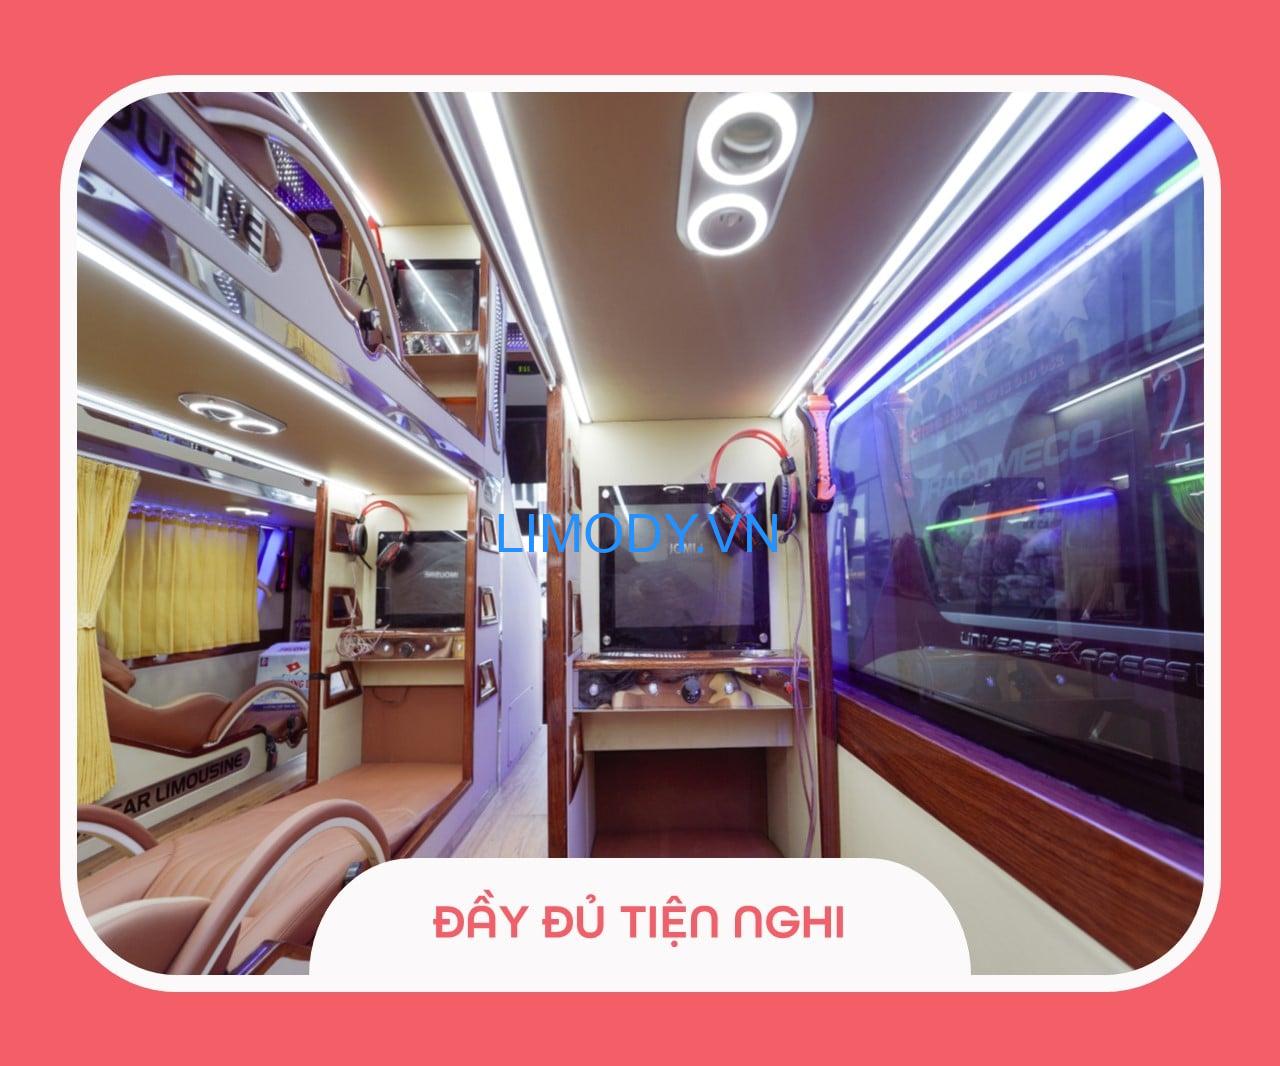 Nhà xe Khánh Hoàn: giá vé, bến xe, số điện thoại và lịch trình đi Cao Bằng